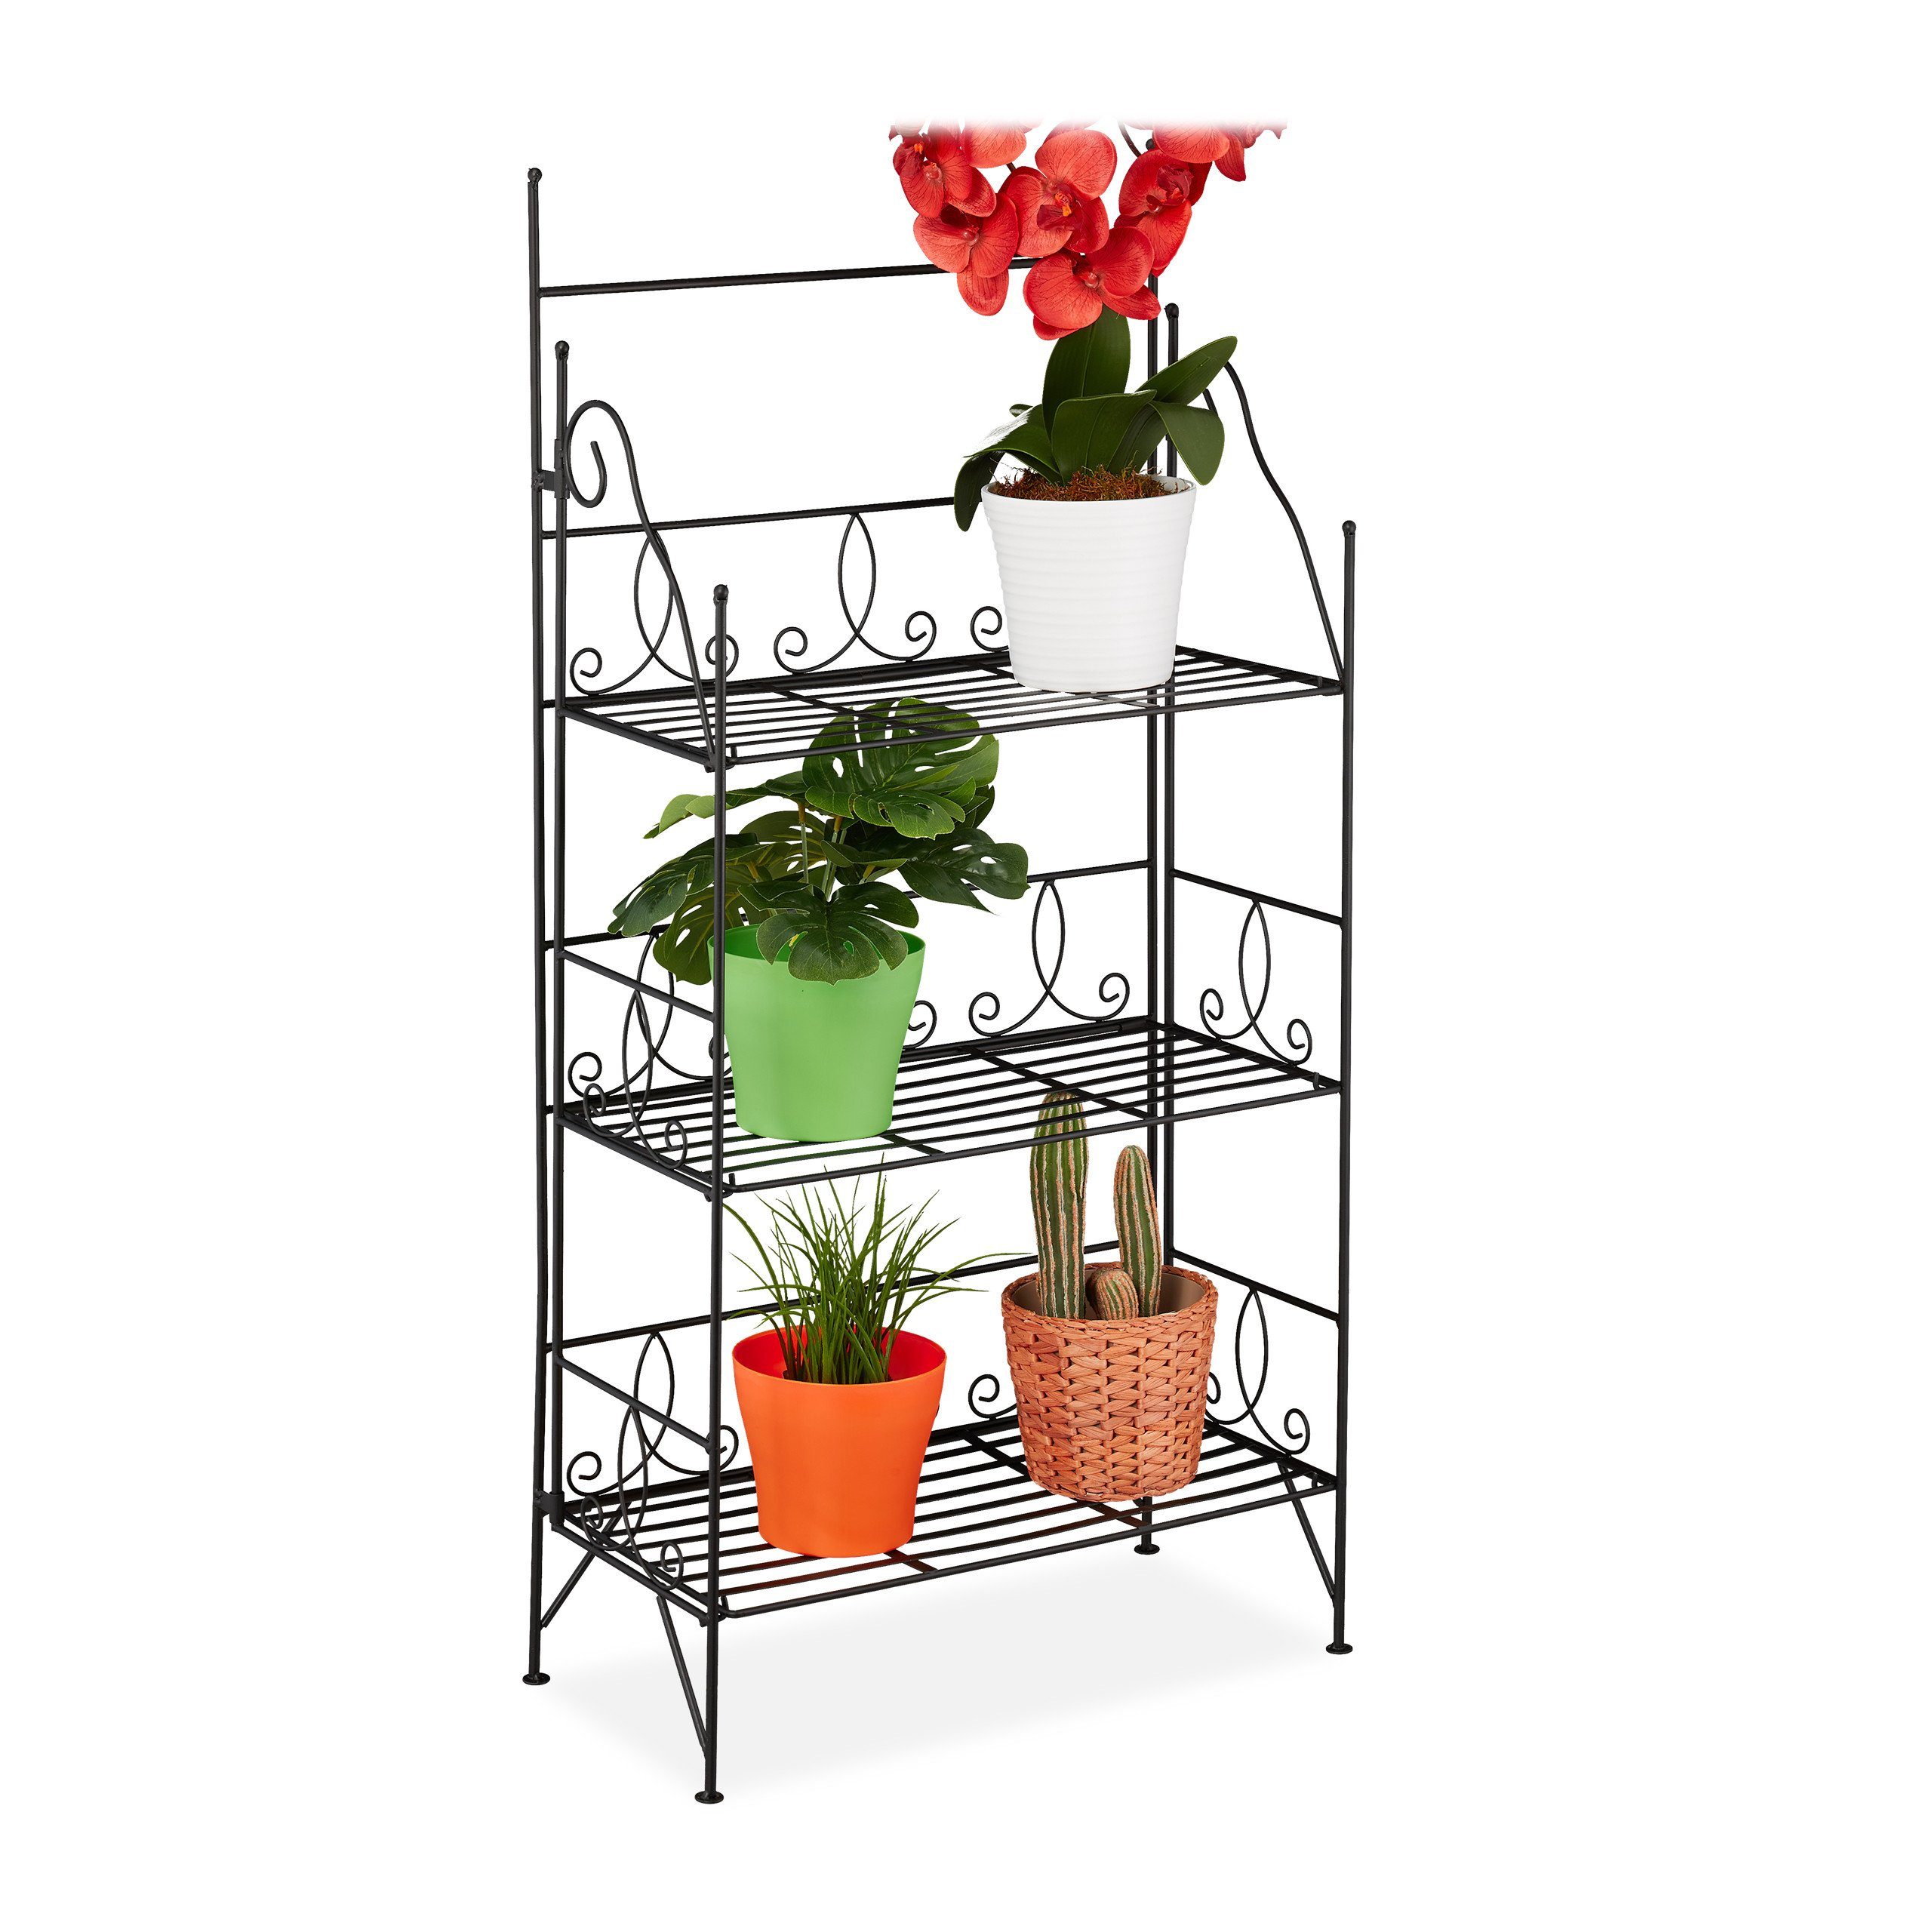 Braun Eisen Pflanzenhalter Stand mit 4 Tier Regalen für Indoor Outdoor Home Balkon ZZBIQS Gartenwagen Display Rack Pflanzenständer 